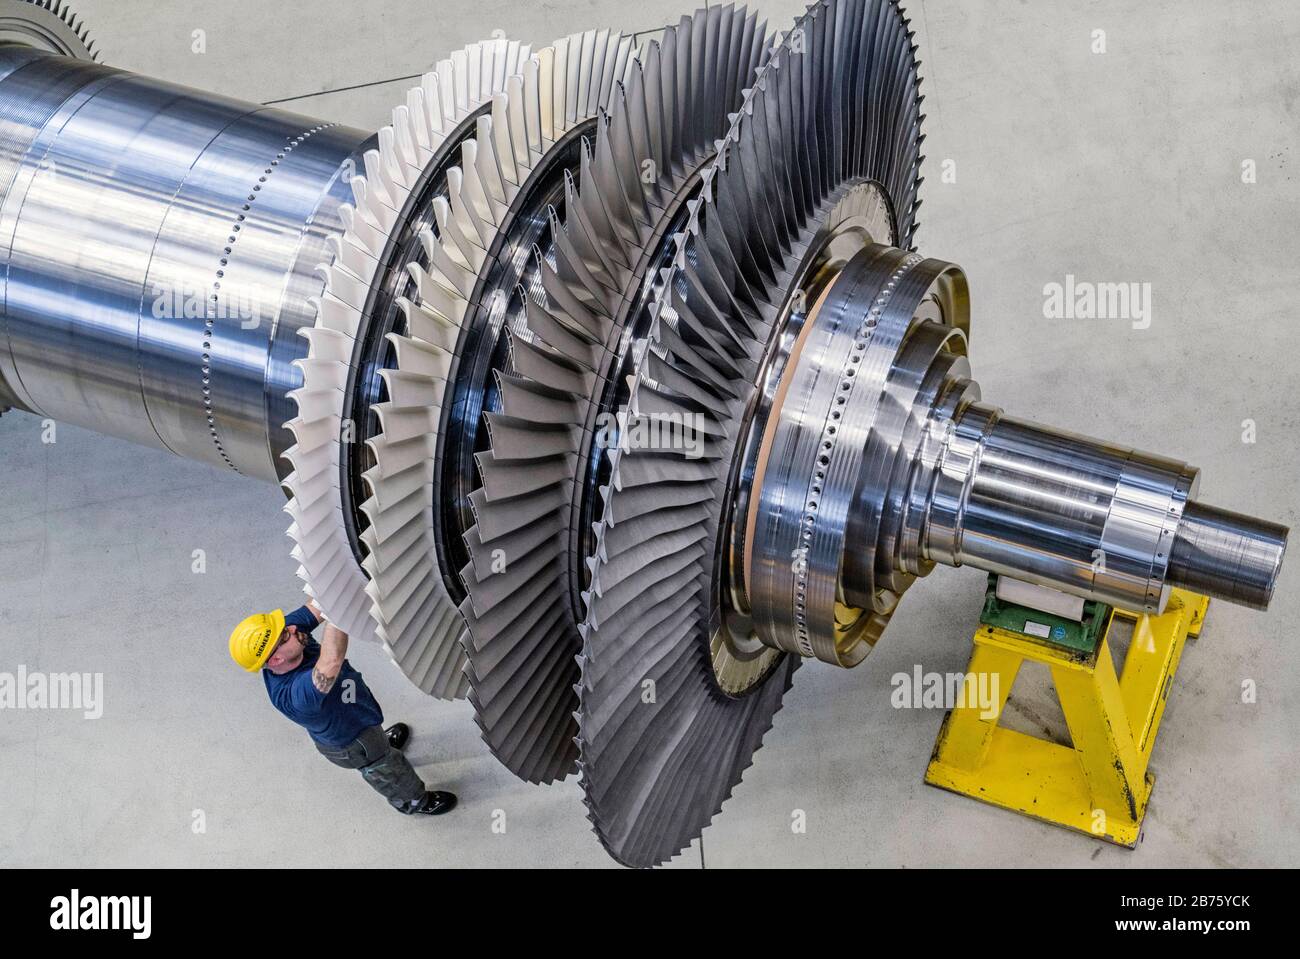 Alemania, Berlín, 02.03.2017. Planta de turbinas de gas Siemens en Berlín en 02.03.2017. Empleados de Siemens. [traducción automática] Foto de stock